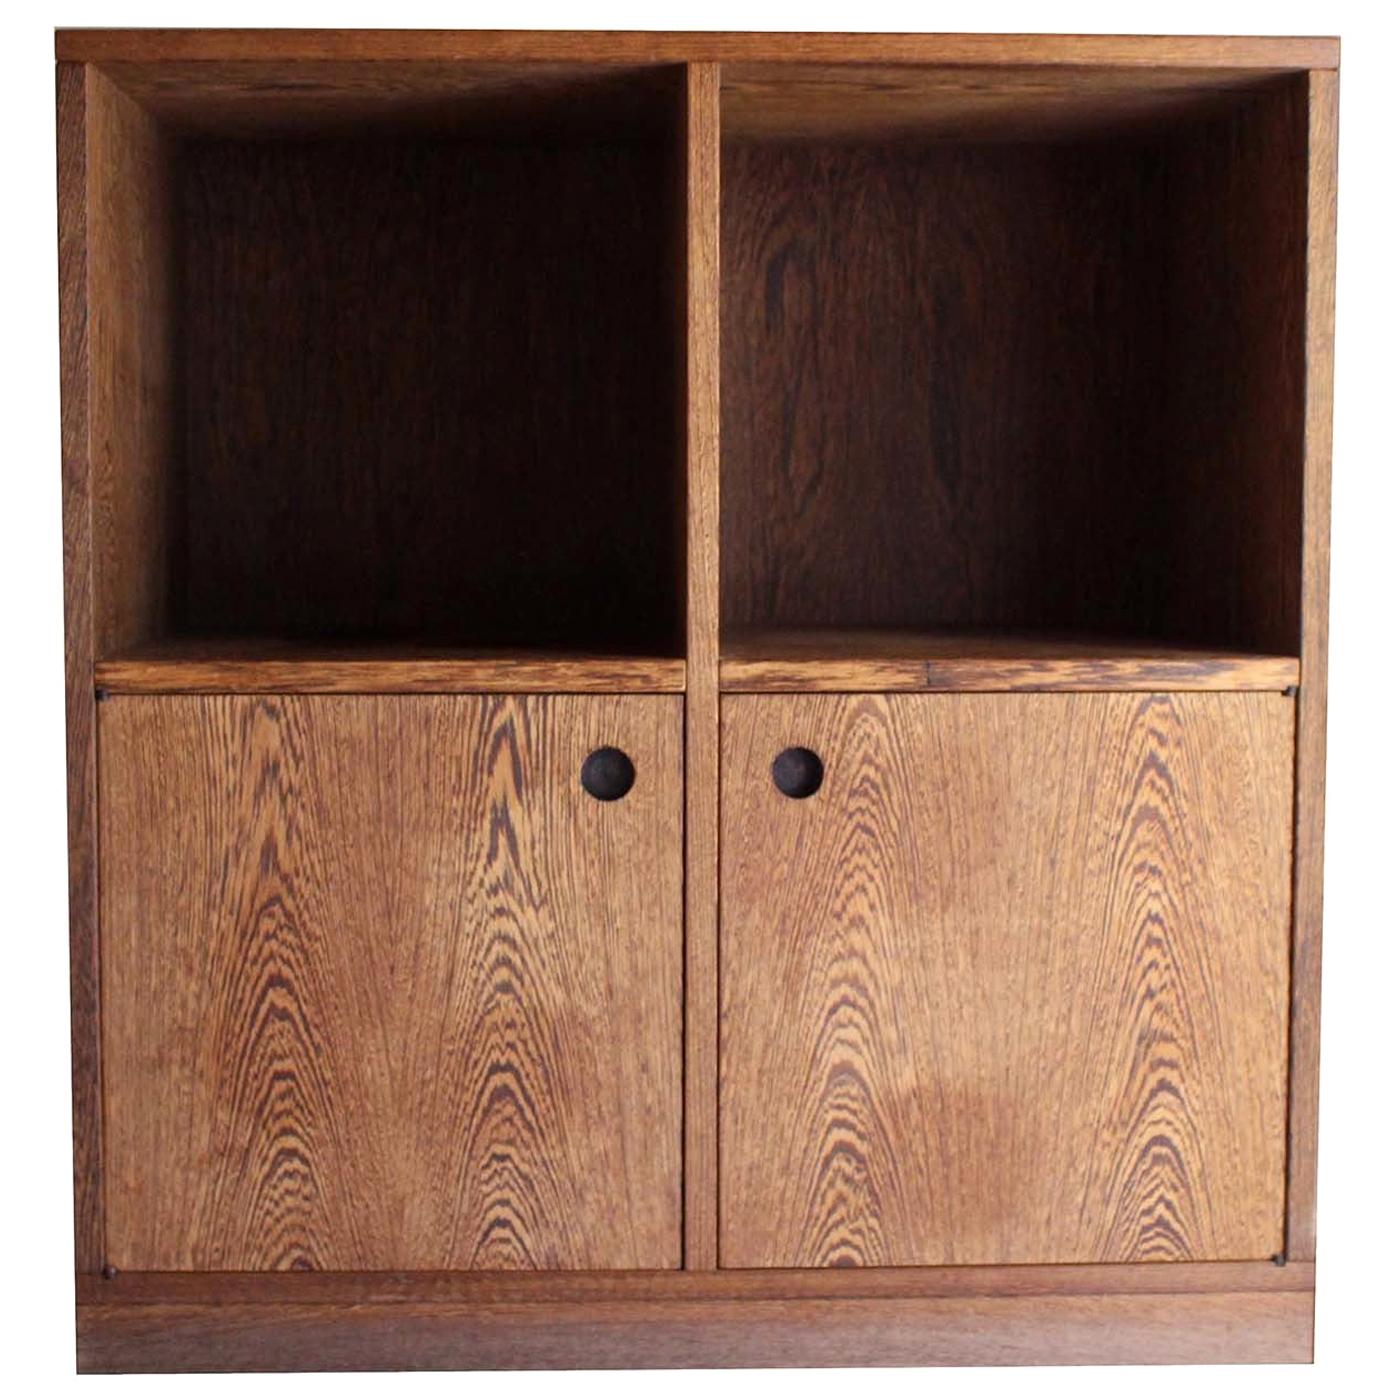 Esotica Small Cabinet